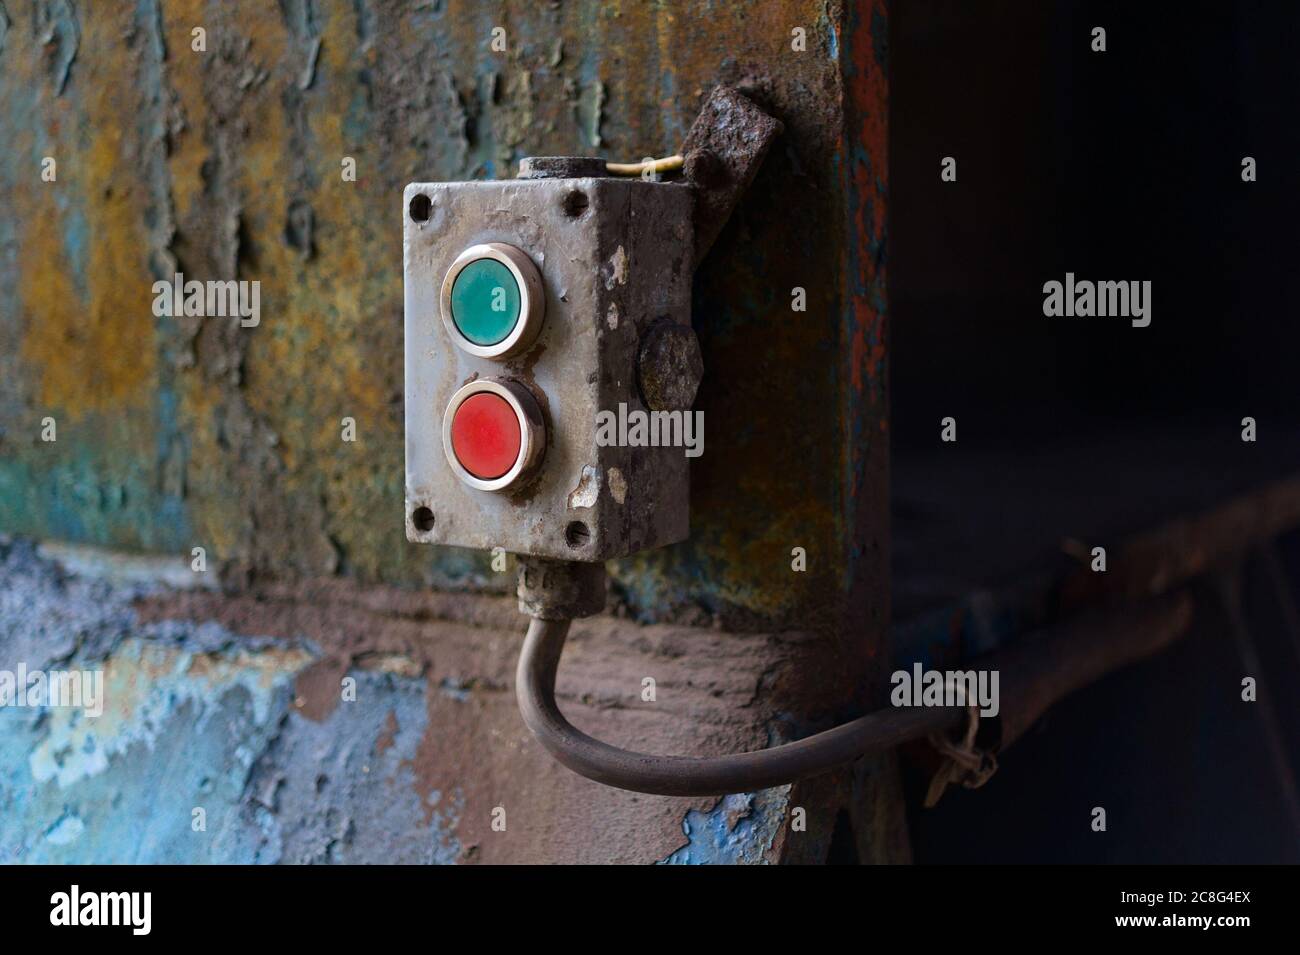 Dispositivo per il controllo della macchina industriale con pulsante rosso e verde tu accensione o spegnimento. Il pannello arrugginito è vecchio e sbiadito Foto Stock